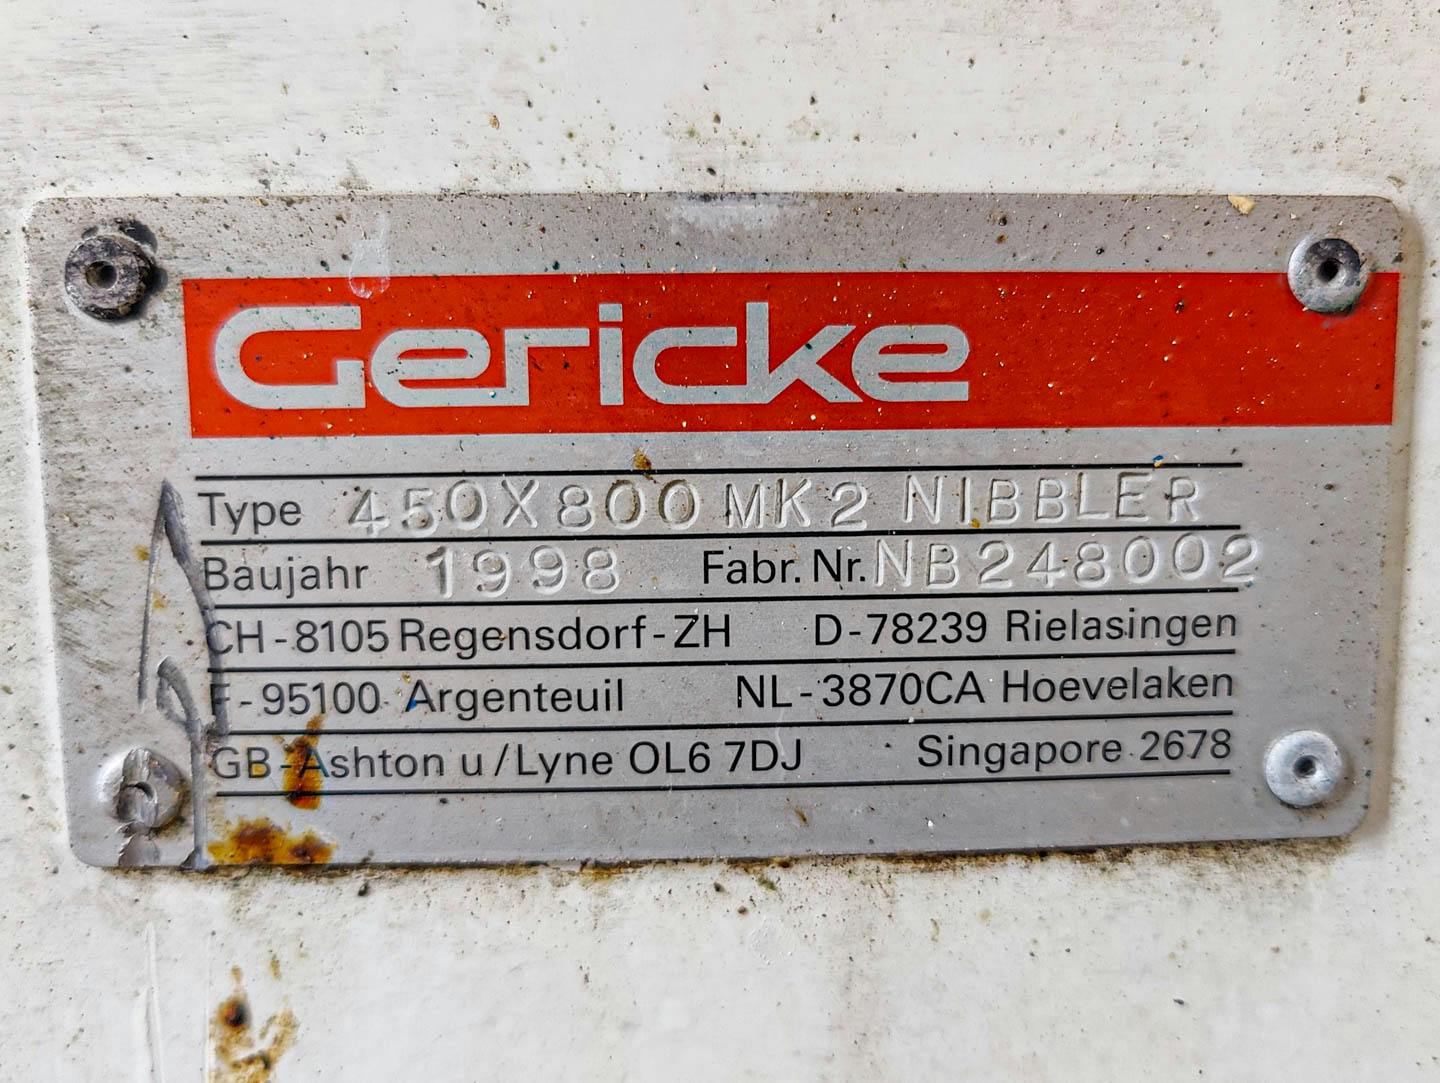 Gericke 450x800 MK2 NIBBLER - Peneira granuladora - image 11